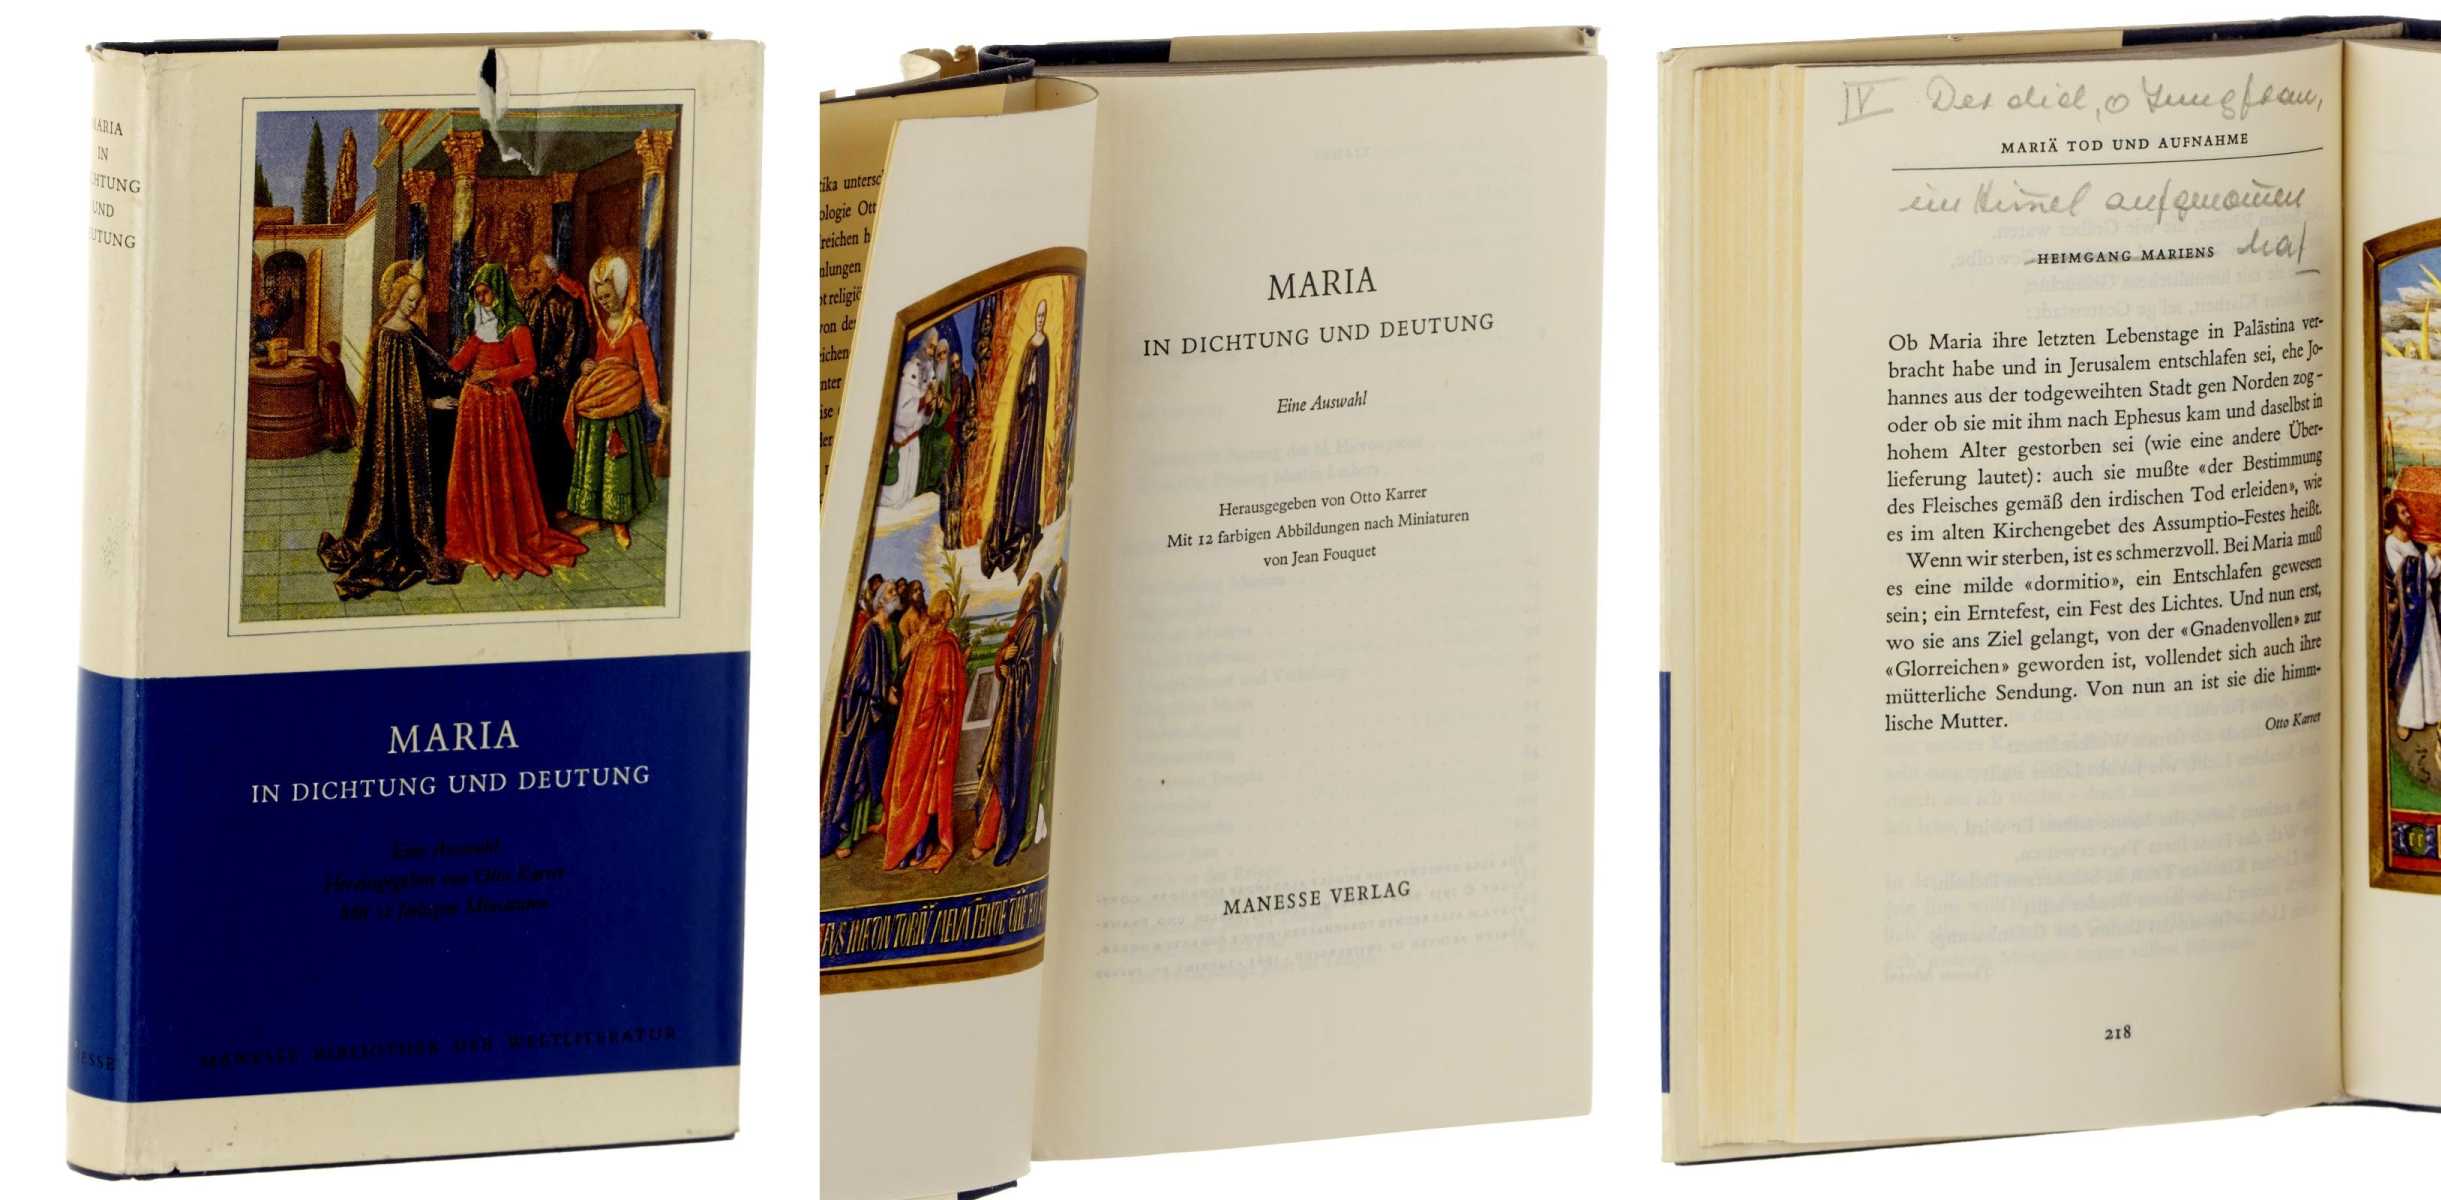 Karrer, Otto (Hg.):  Maria in Dichtung und Deutung. Eine Auswahl. Mit 12 farb. Abb. nach Miniaturen von Jean Fouquet. 